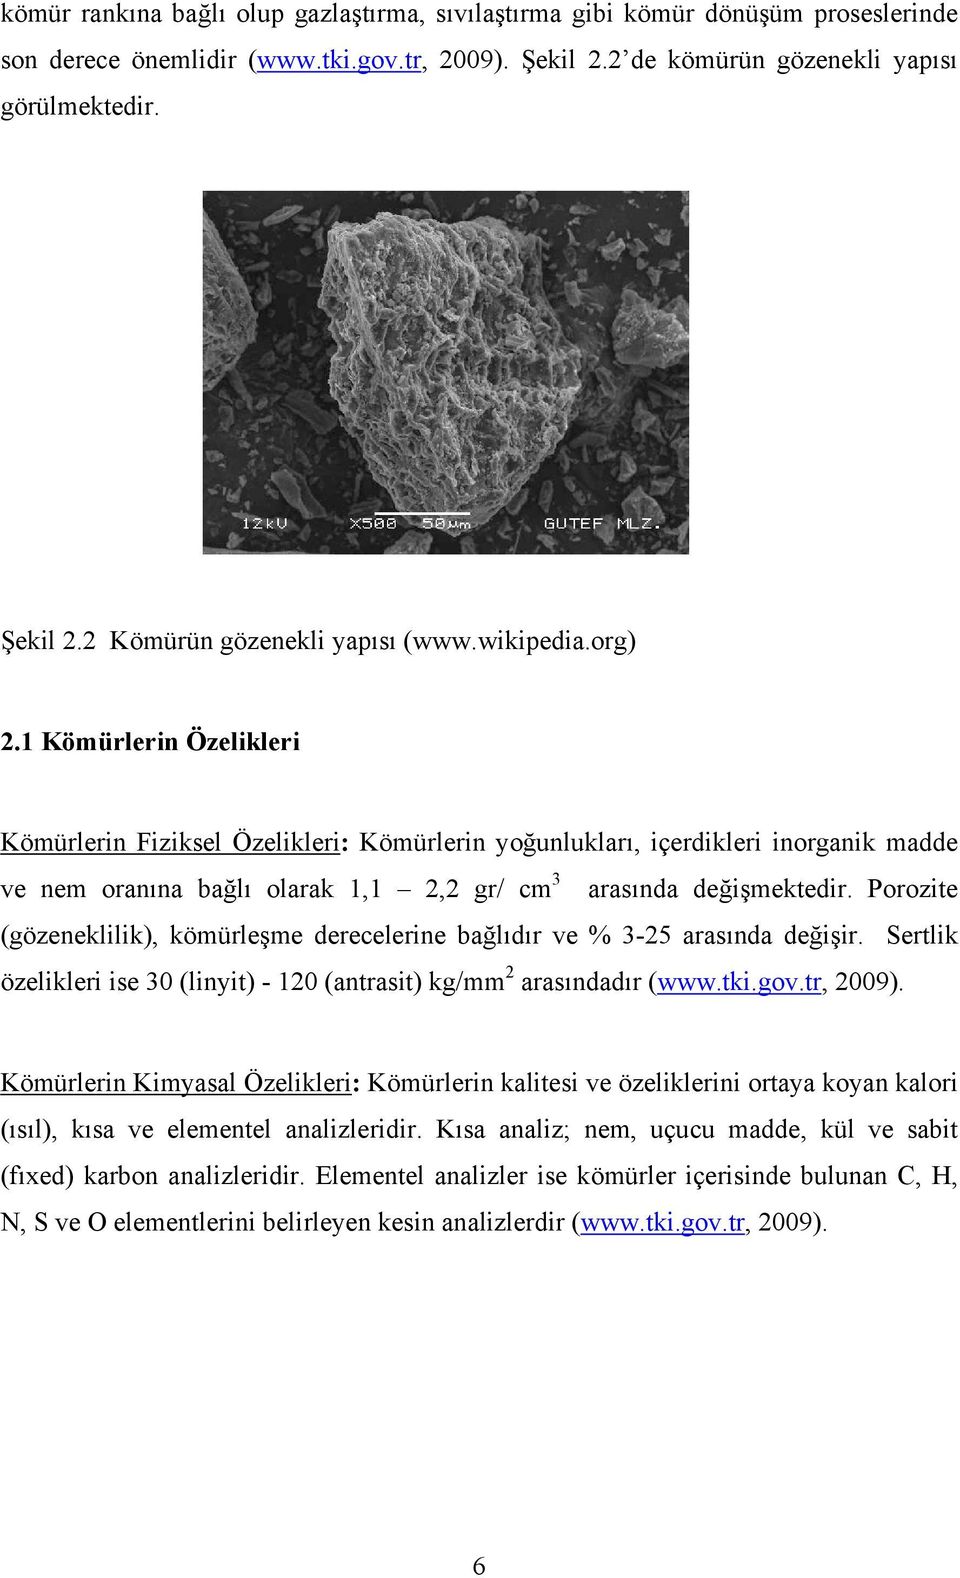 Porozite (gözeneklilik), kömürleşme derecelerine bağlıdır ve % 3-25 arasında değişir. Sertlik özelikleri ise 30 (linyit) - 120 (antrasit) kg/mm 2 arasındadır (www.tki.gov.tr, 2009).